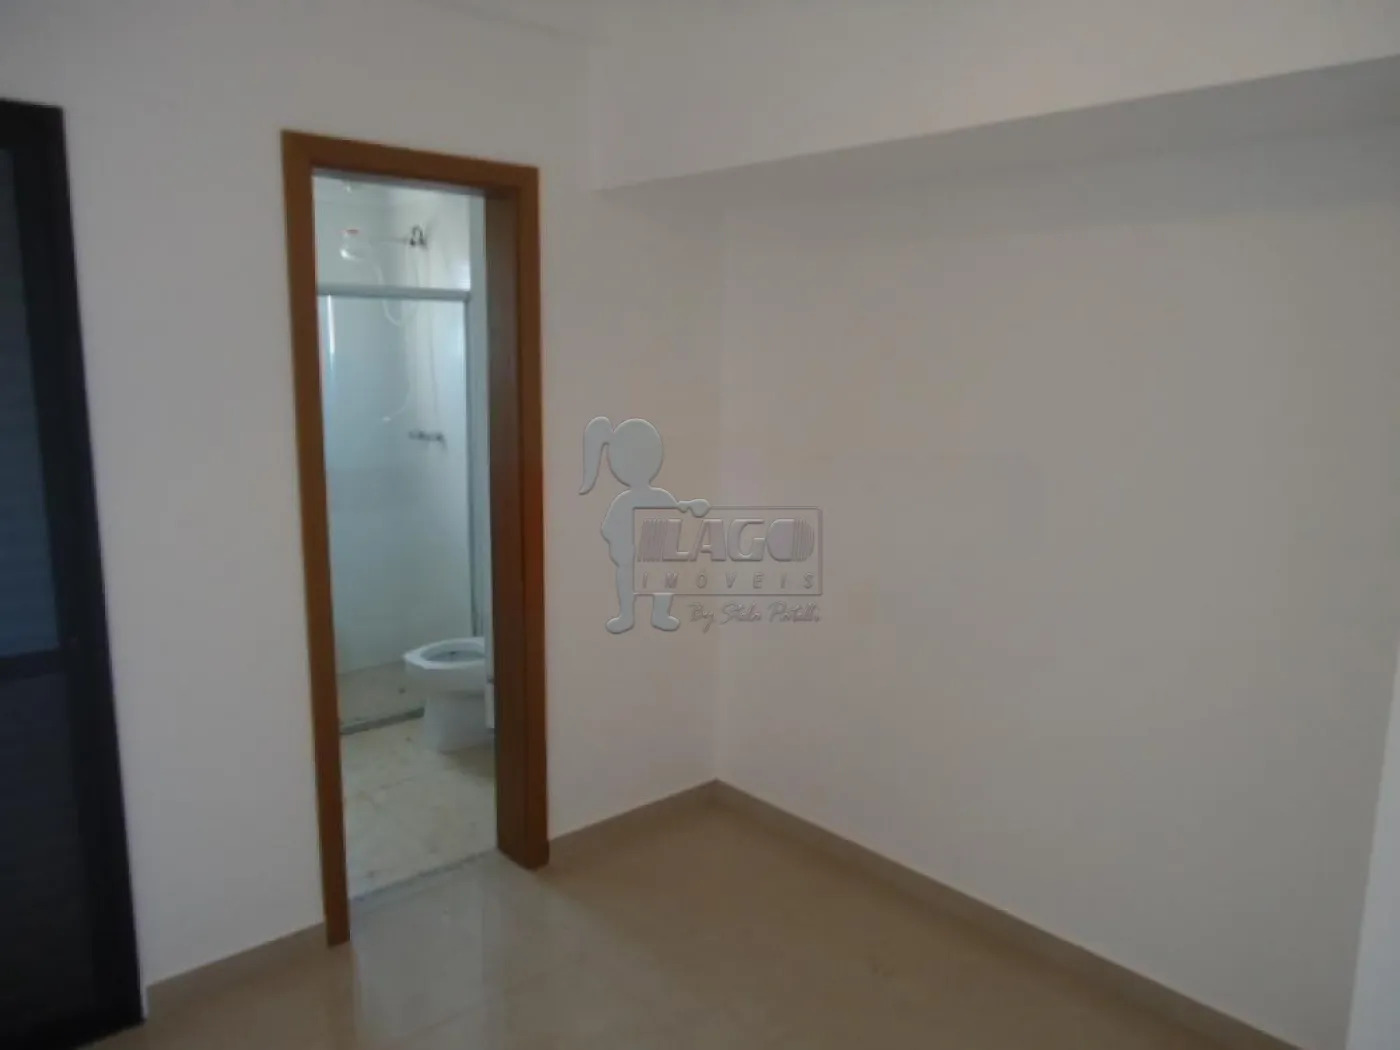 Alugar Apartamentos / Padrão em Ribeirão Preto R$ 3.800,00 - Foto 15